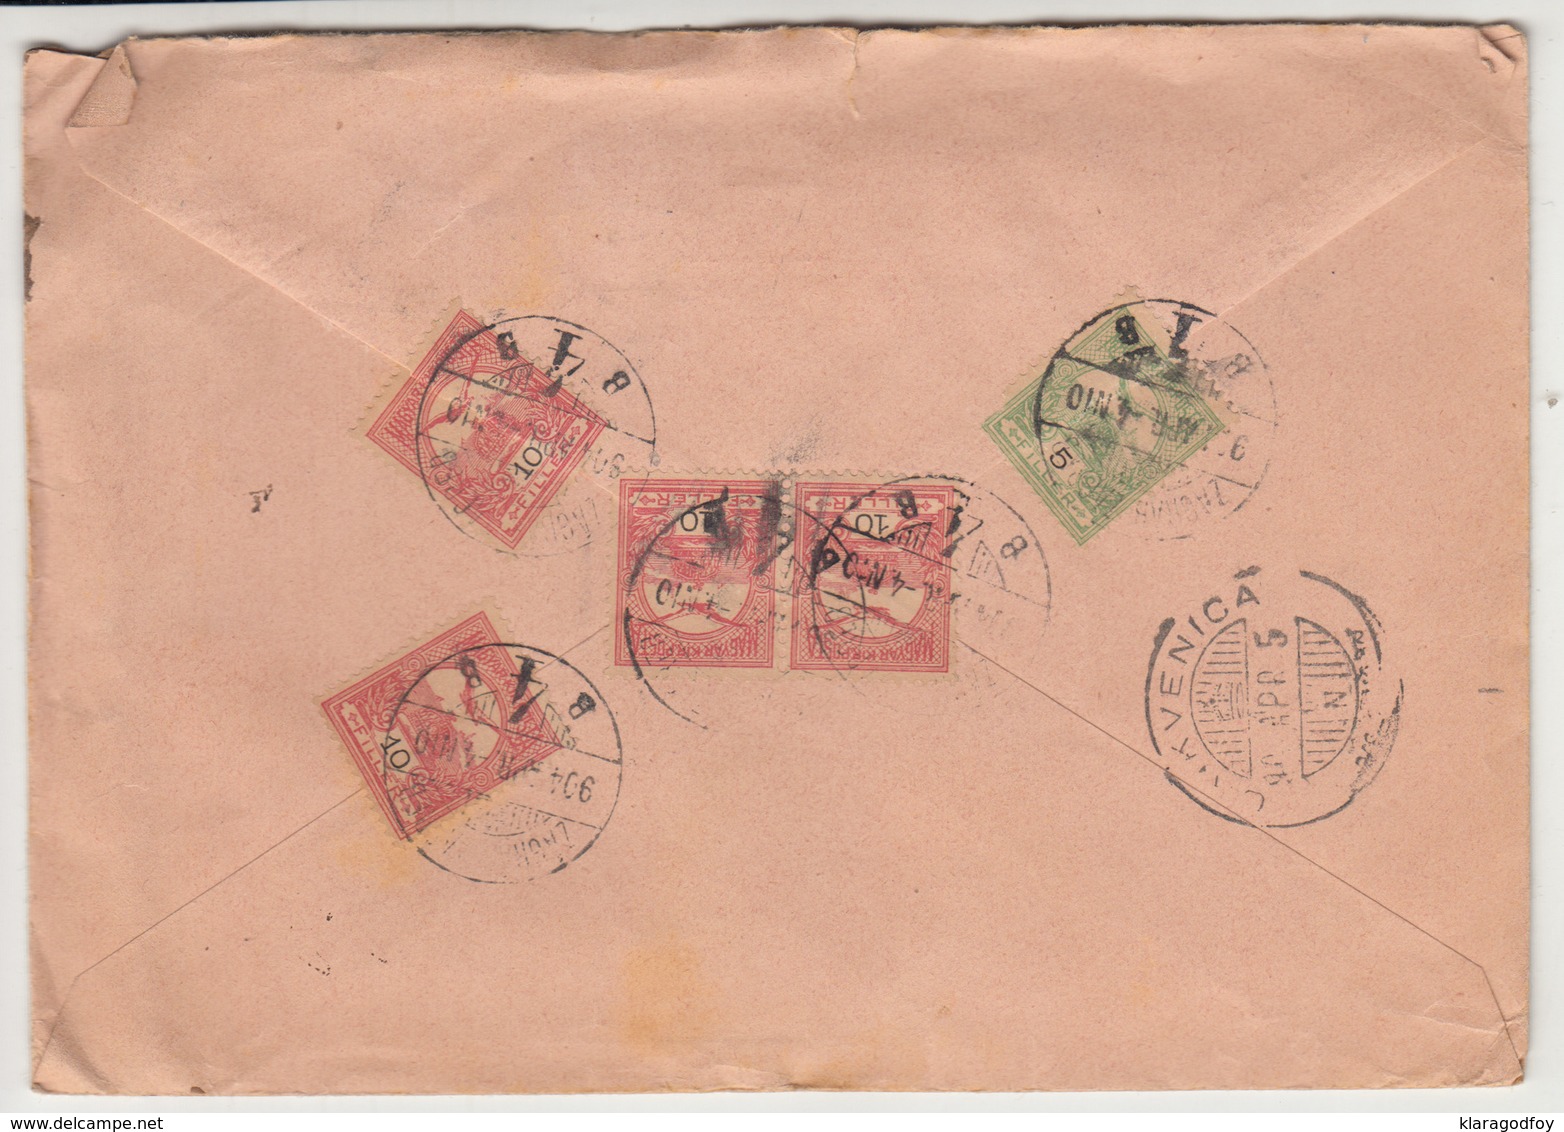 Hungary - Croatia, Varga K.u.k. Hoffotografen Letter Cover Registered Travelled 1904 Zagreb To Crikvenica B180220 - Briefe U. Dokumente